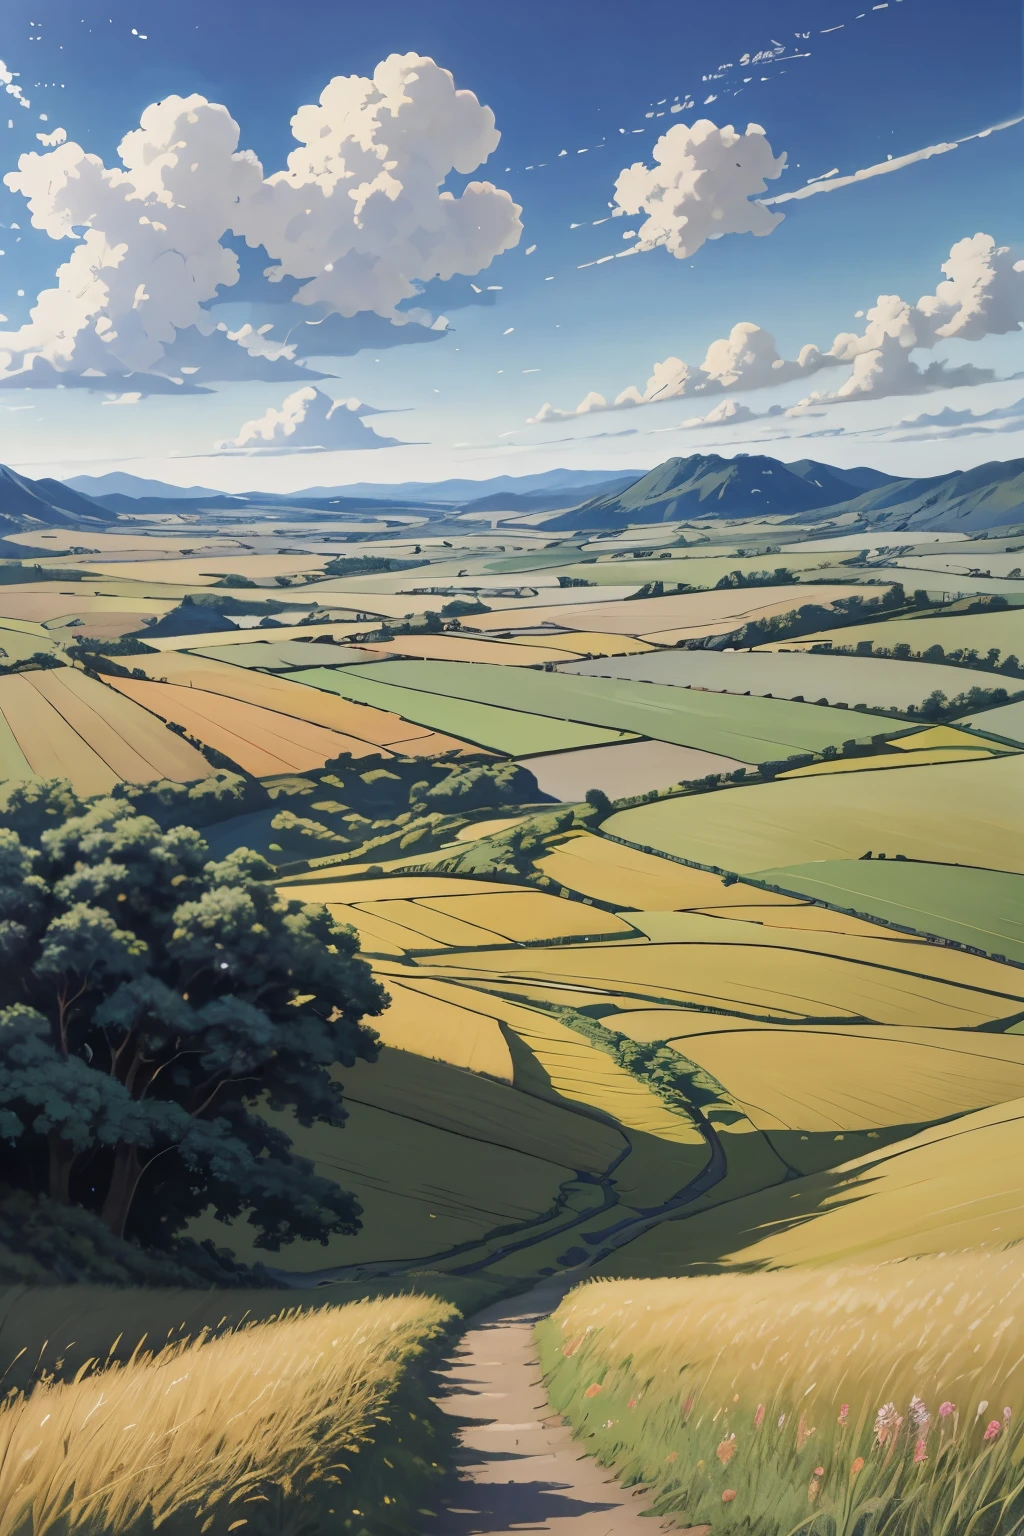 Realistisch, real, wunderschöne und atemberaubende Landschaft Ölgemälde Studio Ghibli Hayao Miyazaki Blütenblätter Grasland blauer Himmel Grasland Landstraße,Gebäude, 